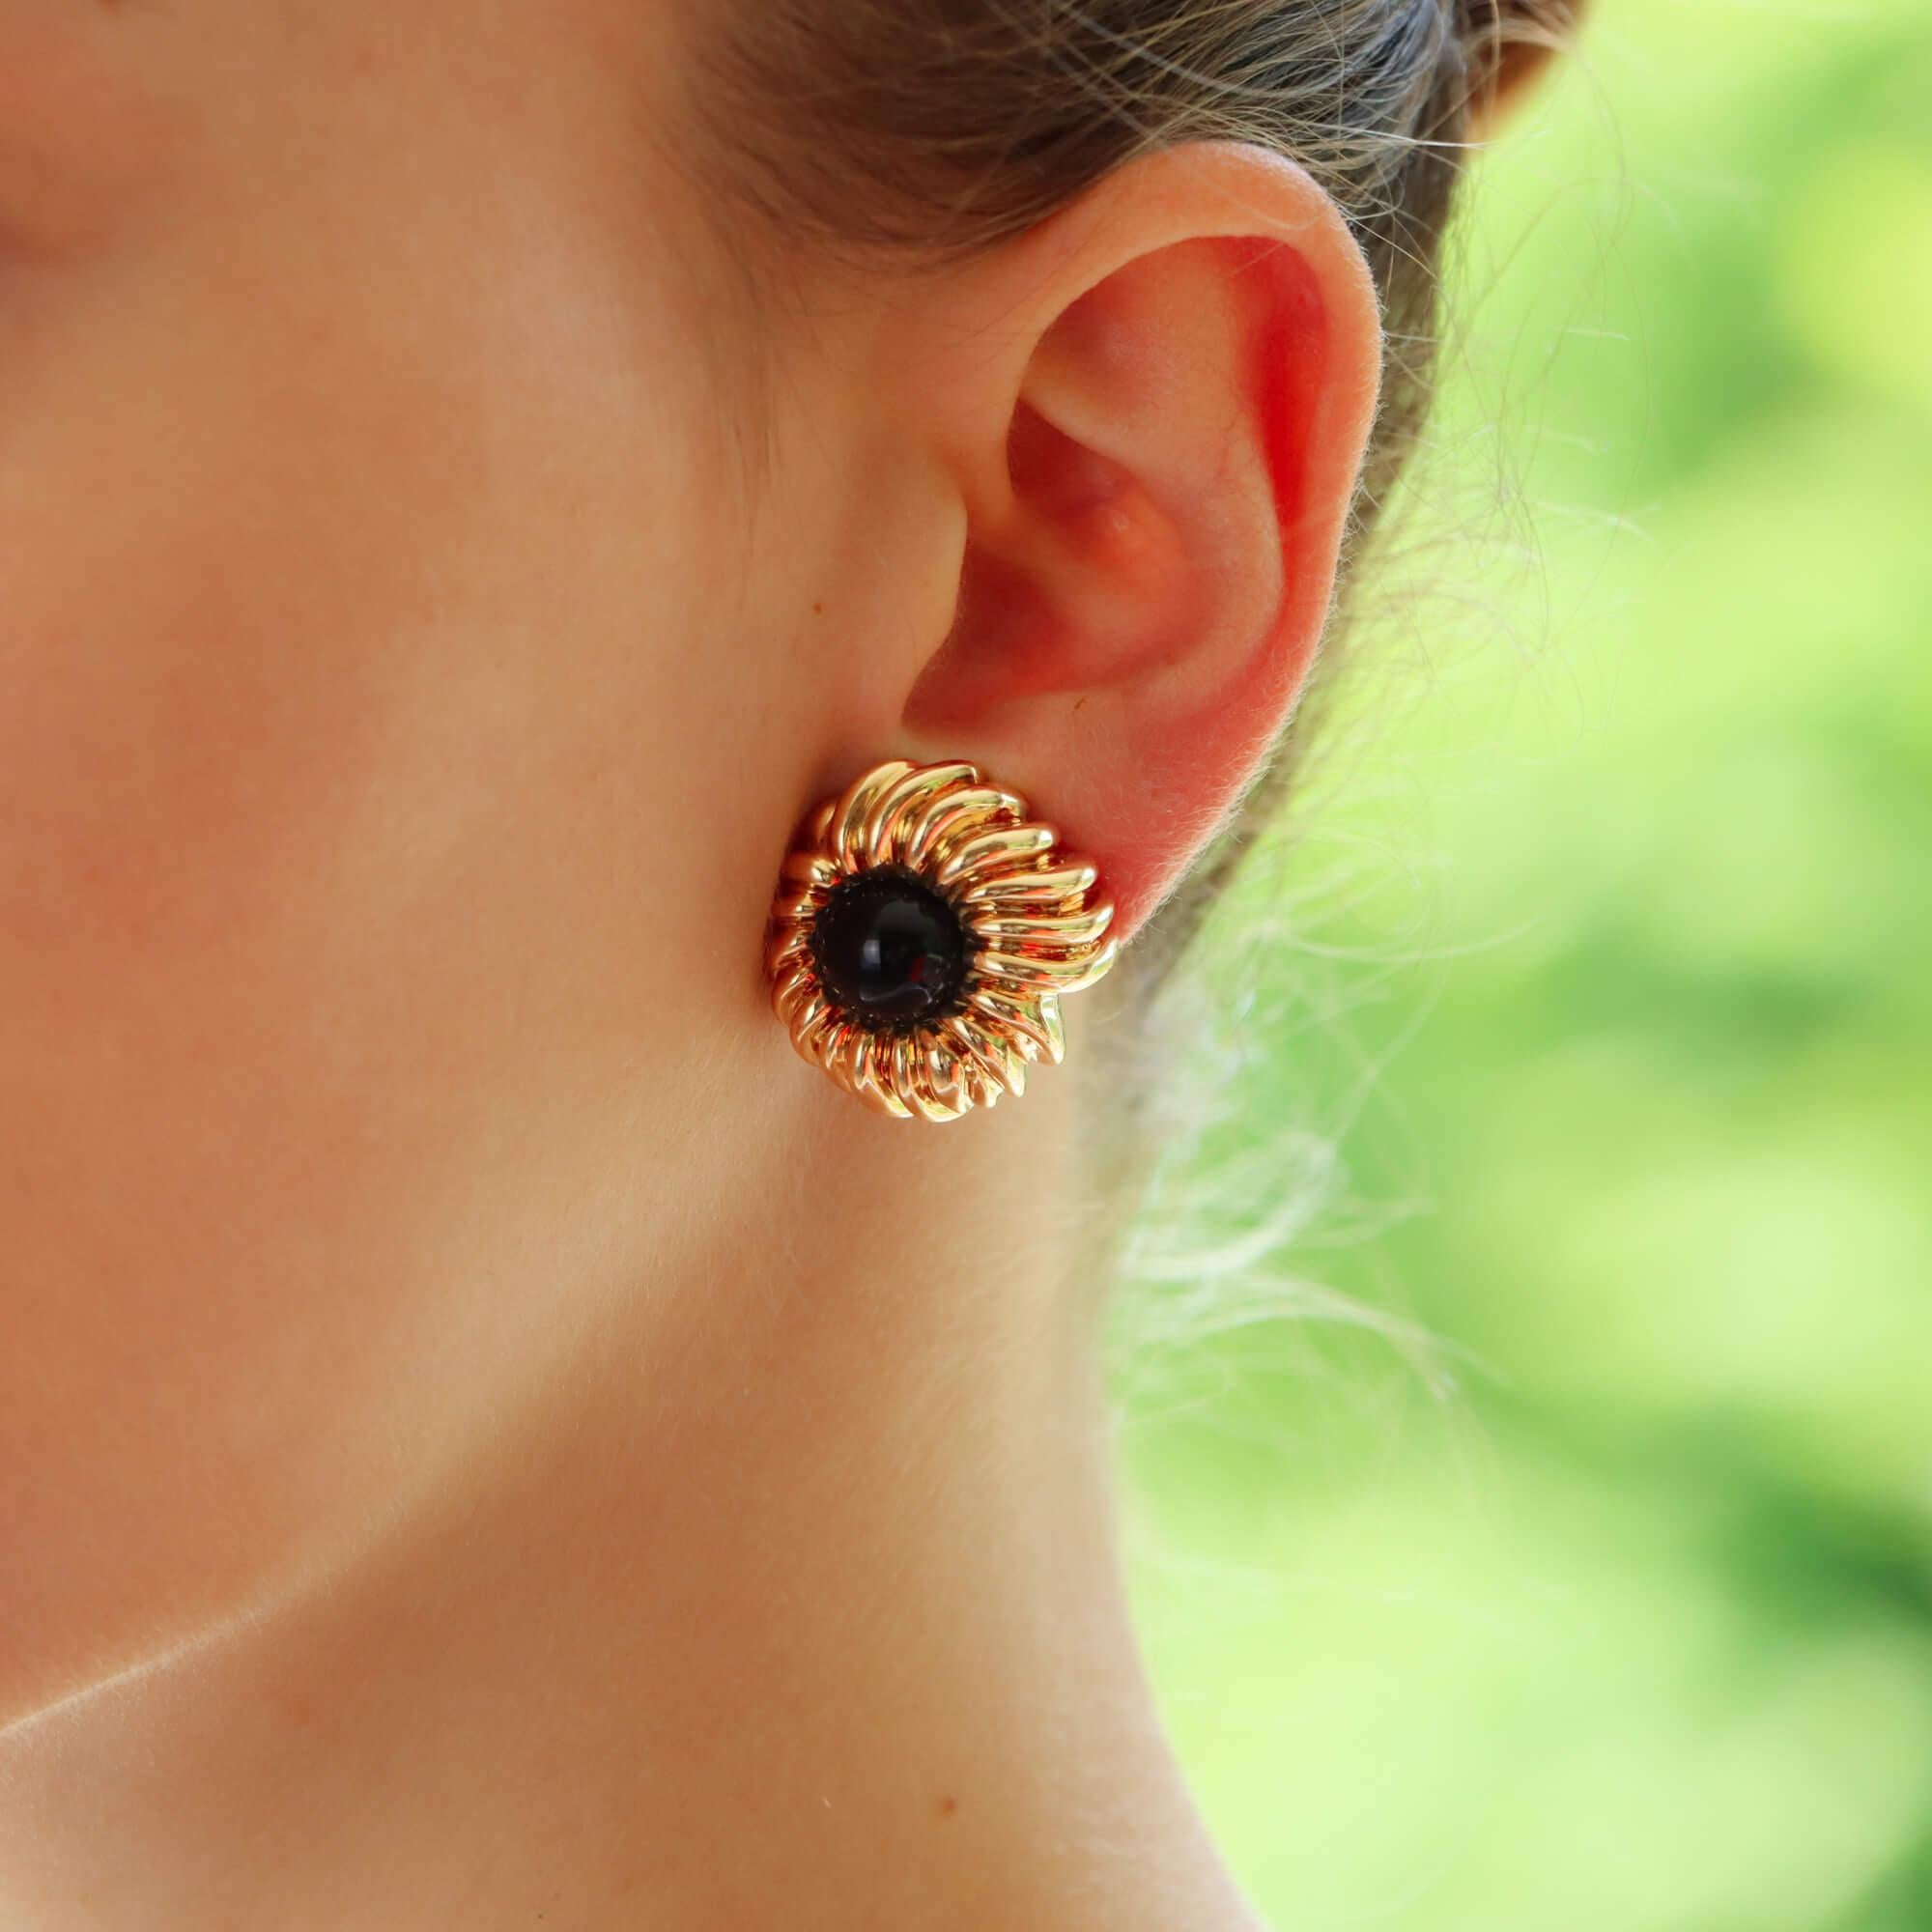 Ein einzigartiges Paar Onyxblüten-Ohrringe von Tiffany & Co. in 18 Karat Gelbgold.

Jeder Ohrring besteht aus einem stilvollen, abstrakten Blumenmotiv. Die Blütenblätter sind so gestaltet, dass sie sich elegant über den Lappen ziehen und in der